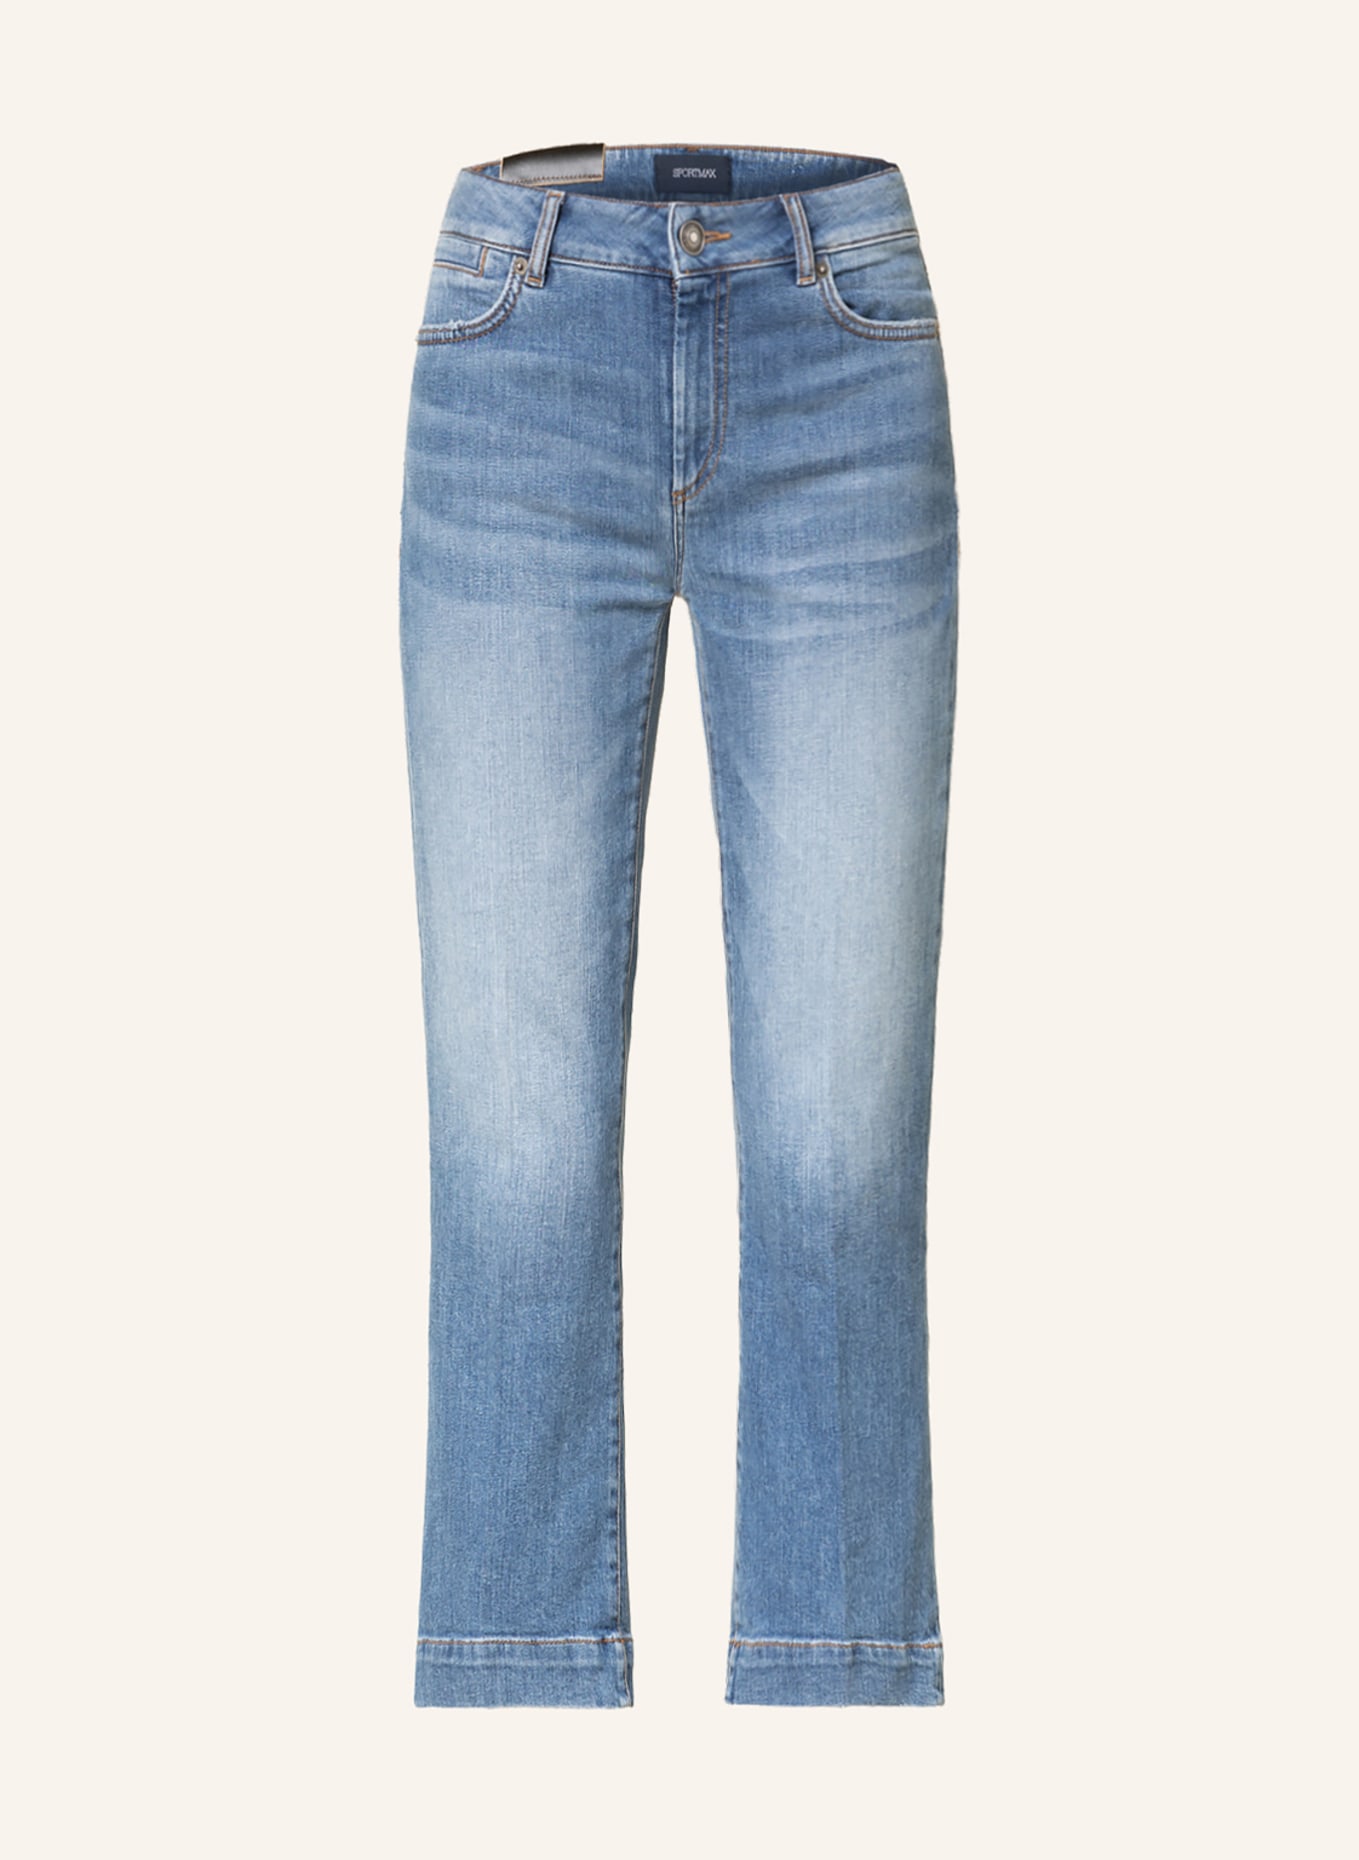 SPORTMAX 7/8-Jeans MESSICO, Farbe: 005 MIDNIGHTBLUE(Bild null)